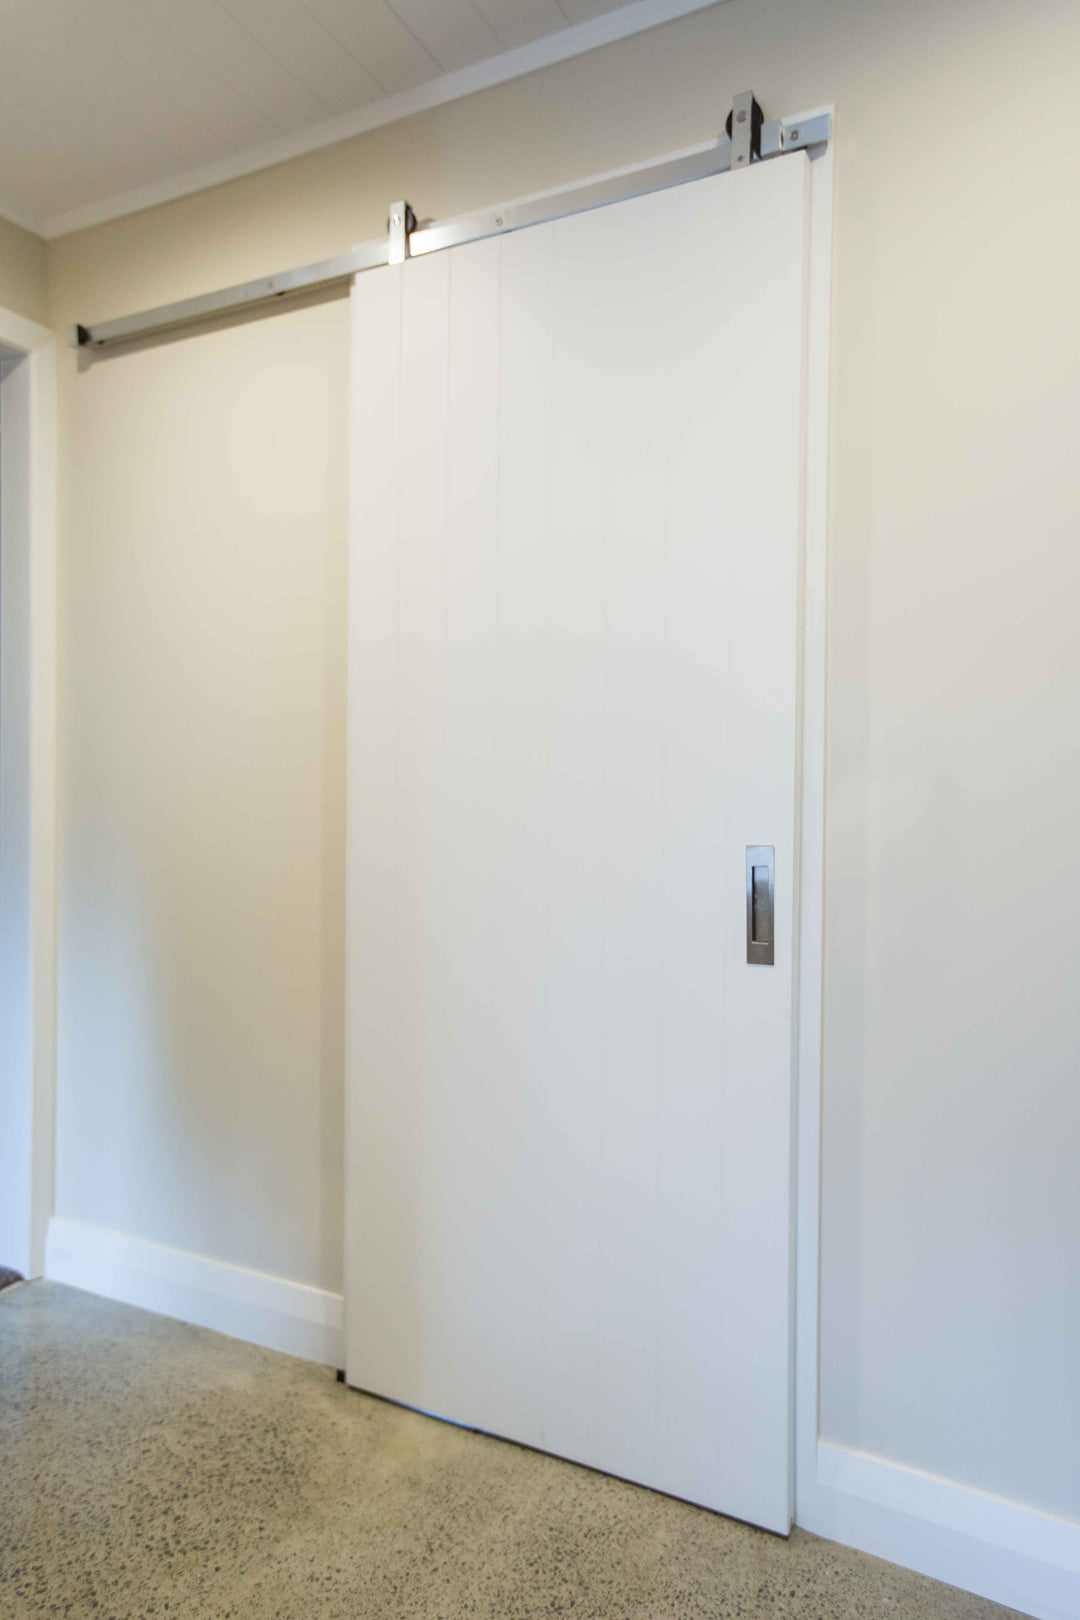 IN.15.901.L Aluminium Sliding Door Kit for 600 - 1150mm wide wooden doors, Maximum weight door 60 kg.